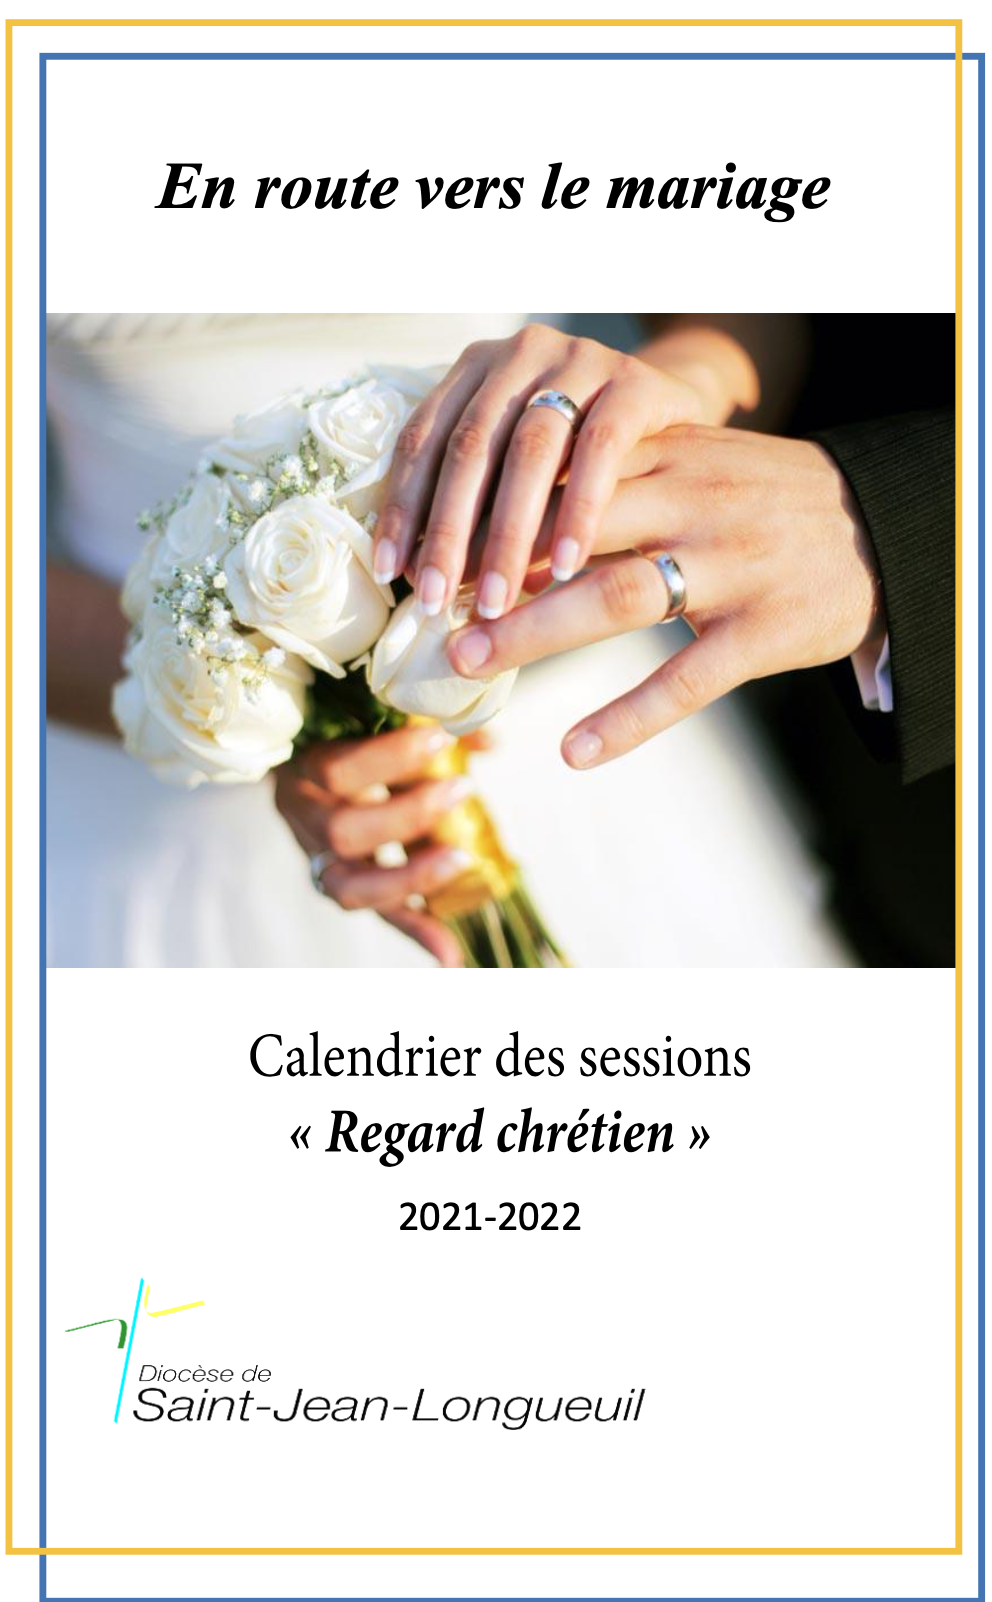 Calendrier Regard Chrétien - Sessions de préparation au mariage - Diocèse de Saint-Jean-Longueuil